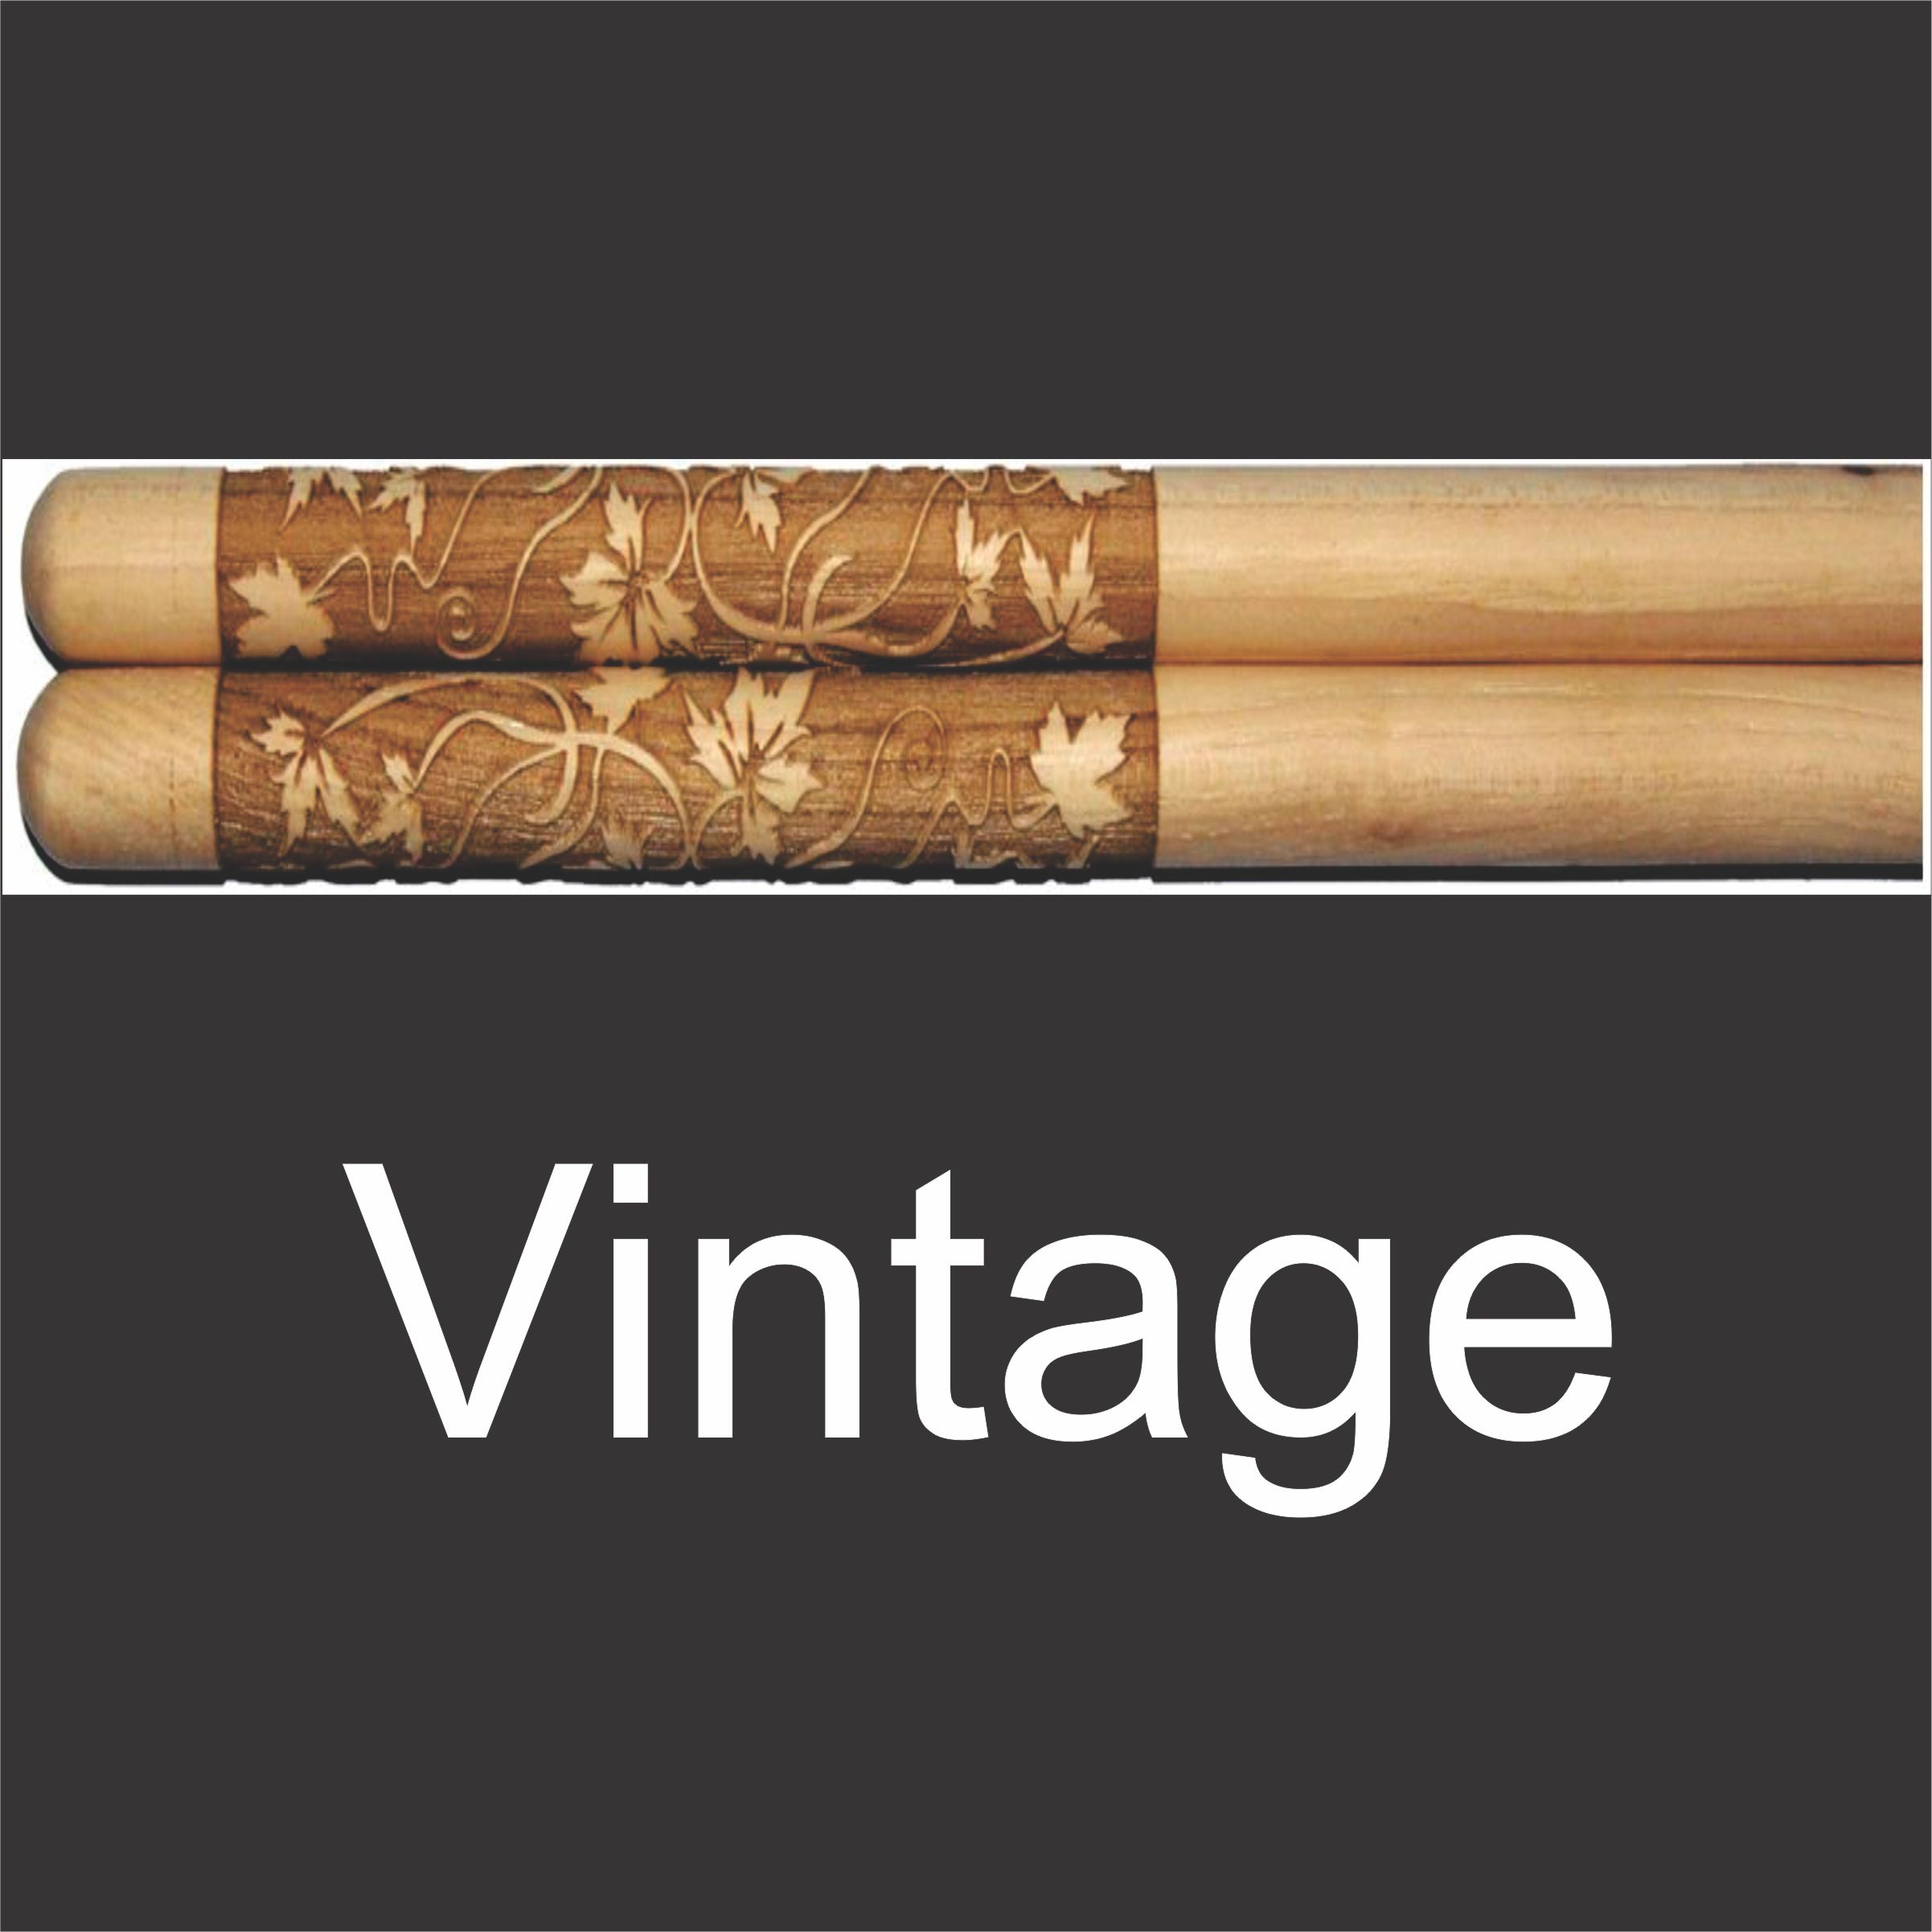 predesigned drumstick set with elaborate vine and leaf design